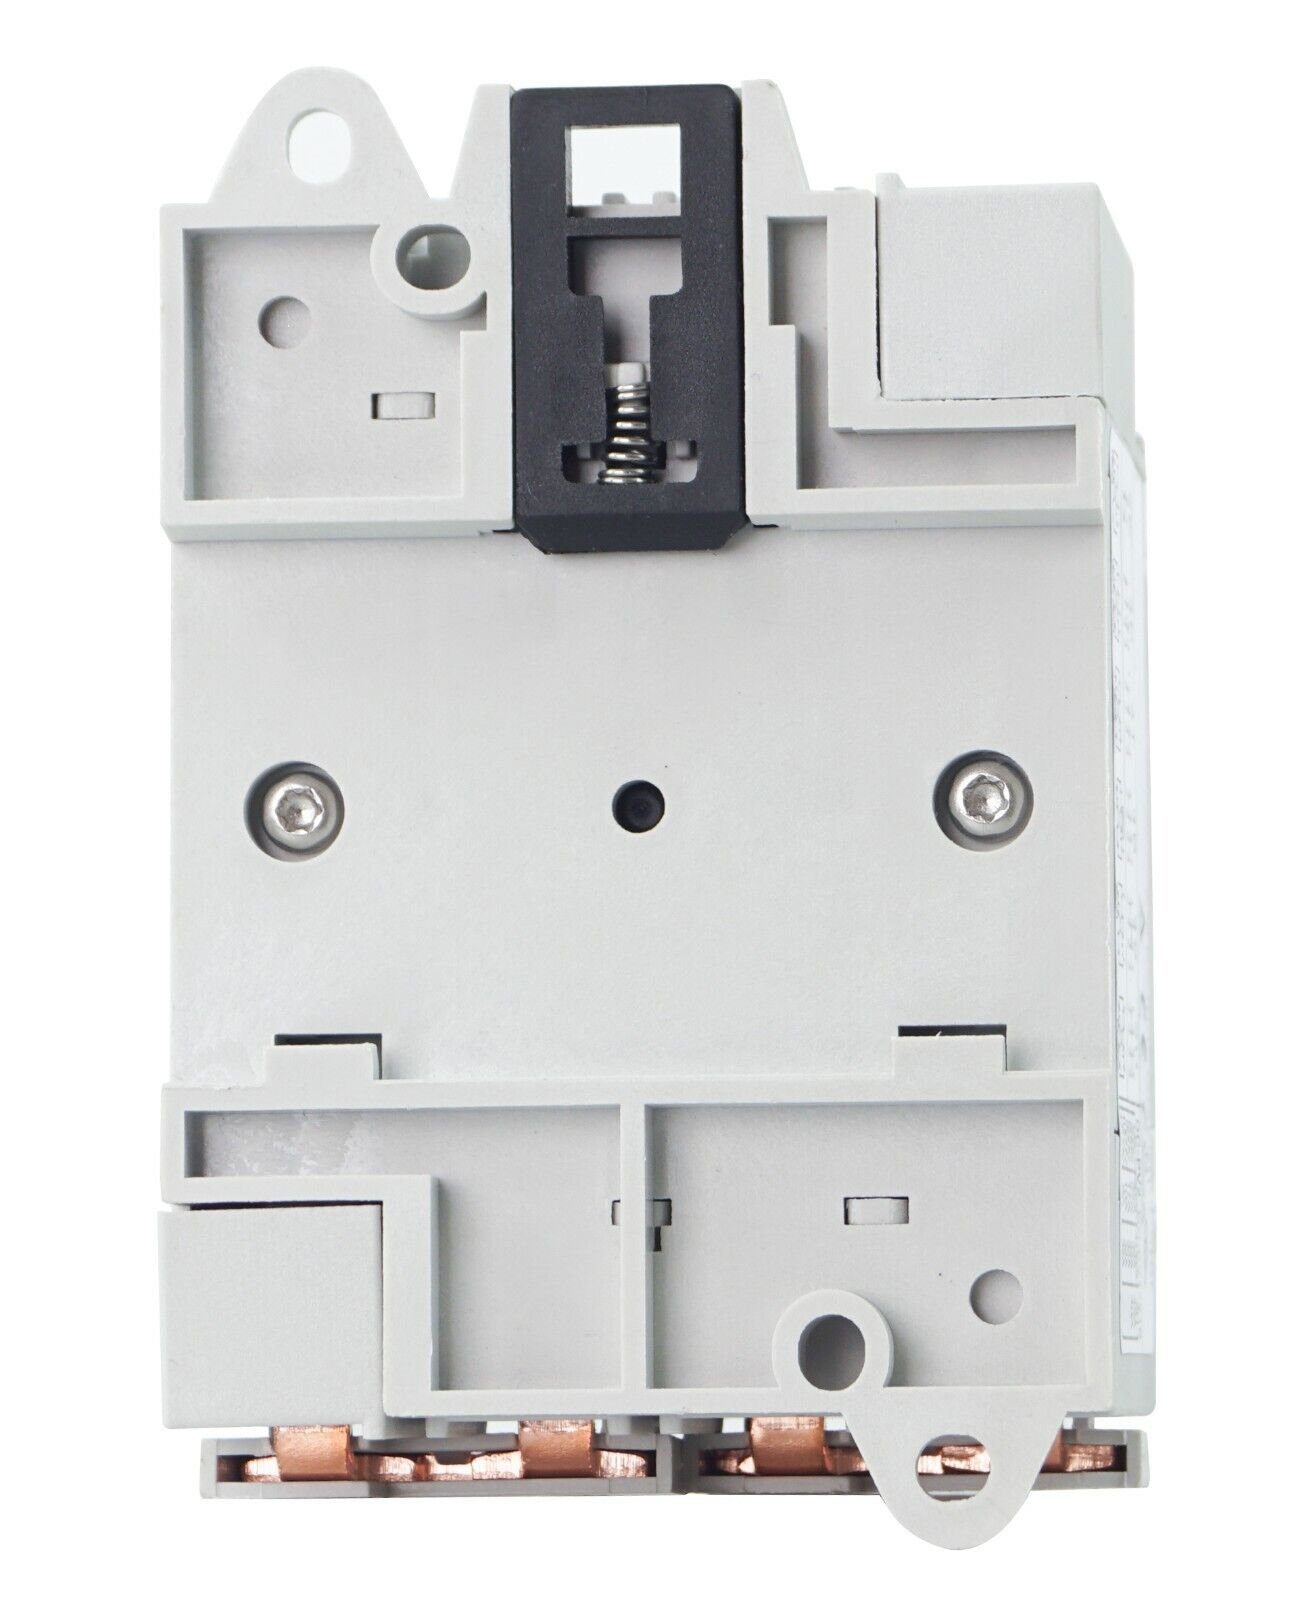 Trennschalter Leistungsschalter PV IP20 1200V Schalter, 4-polig DC Solar 32A APV Ausschalter